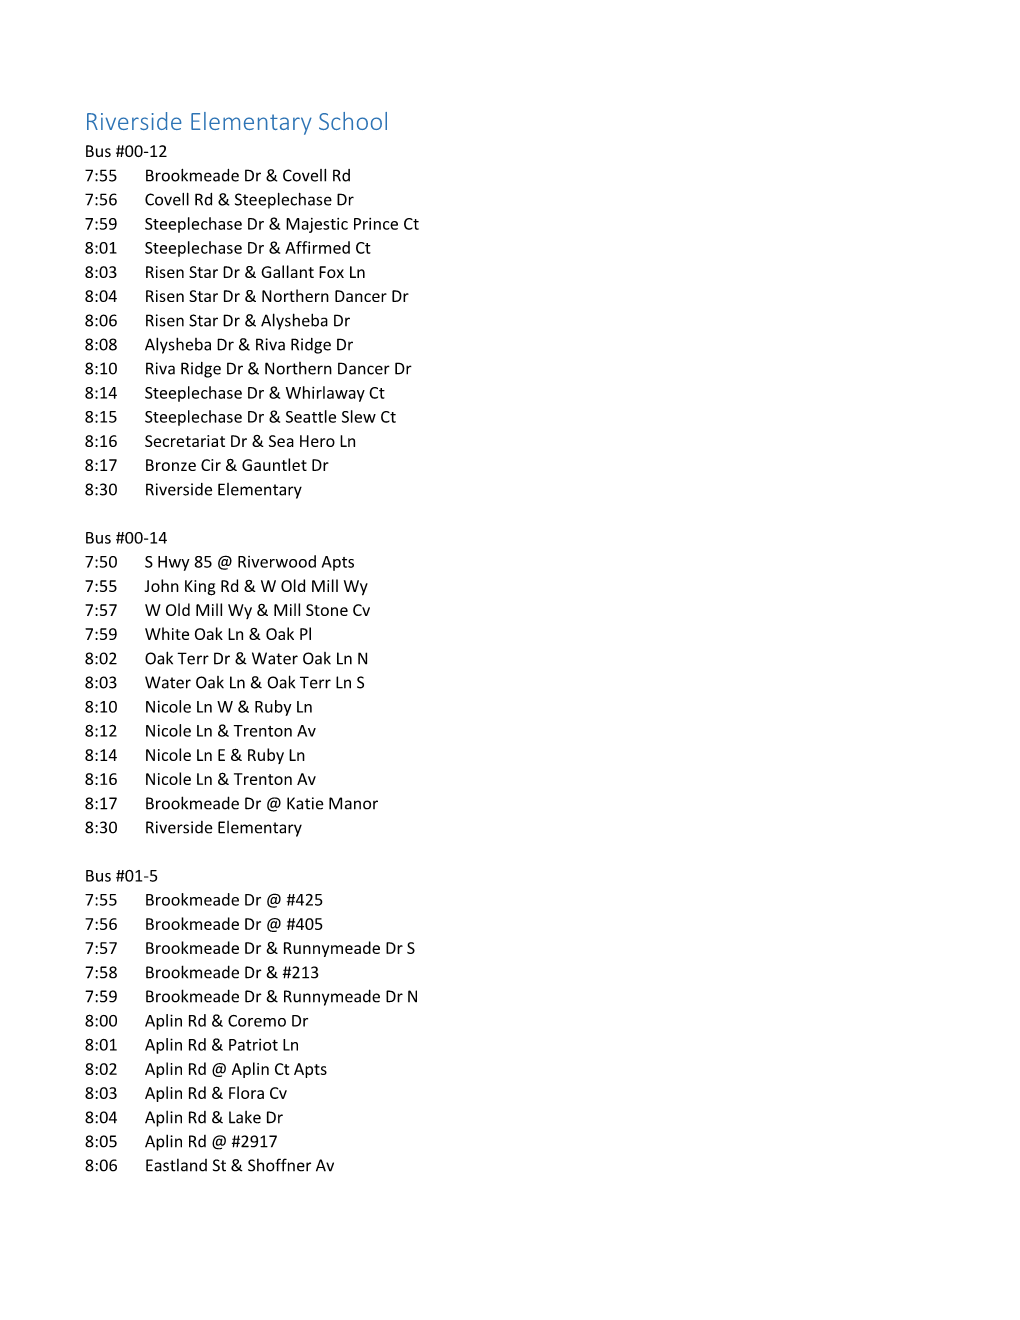 Riverside Bus Schedules